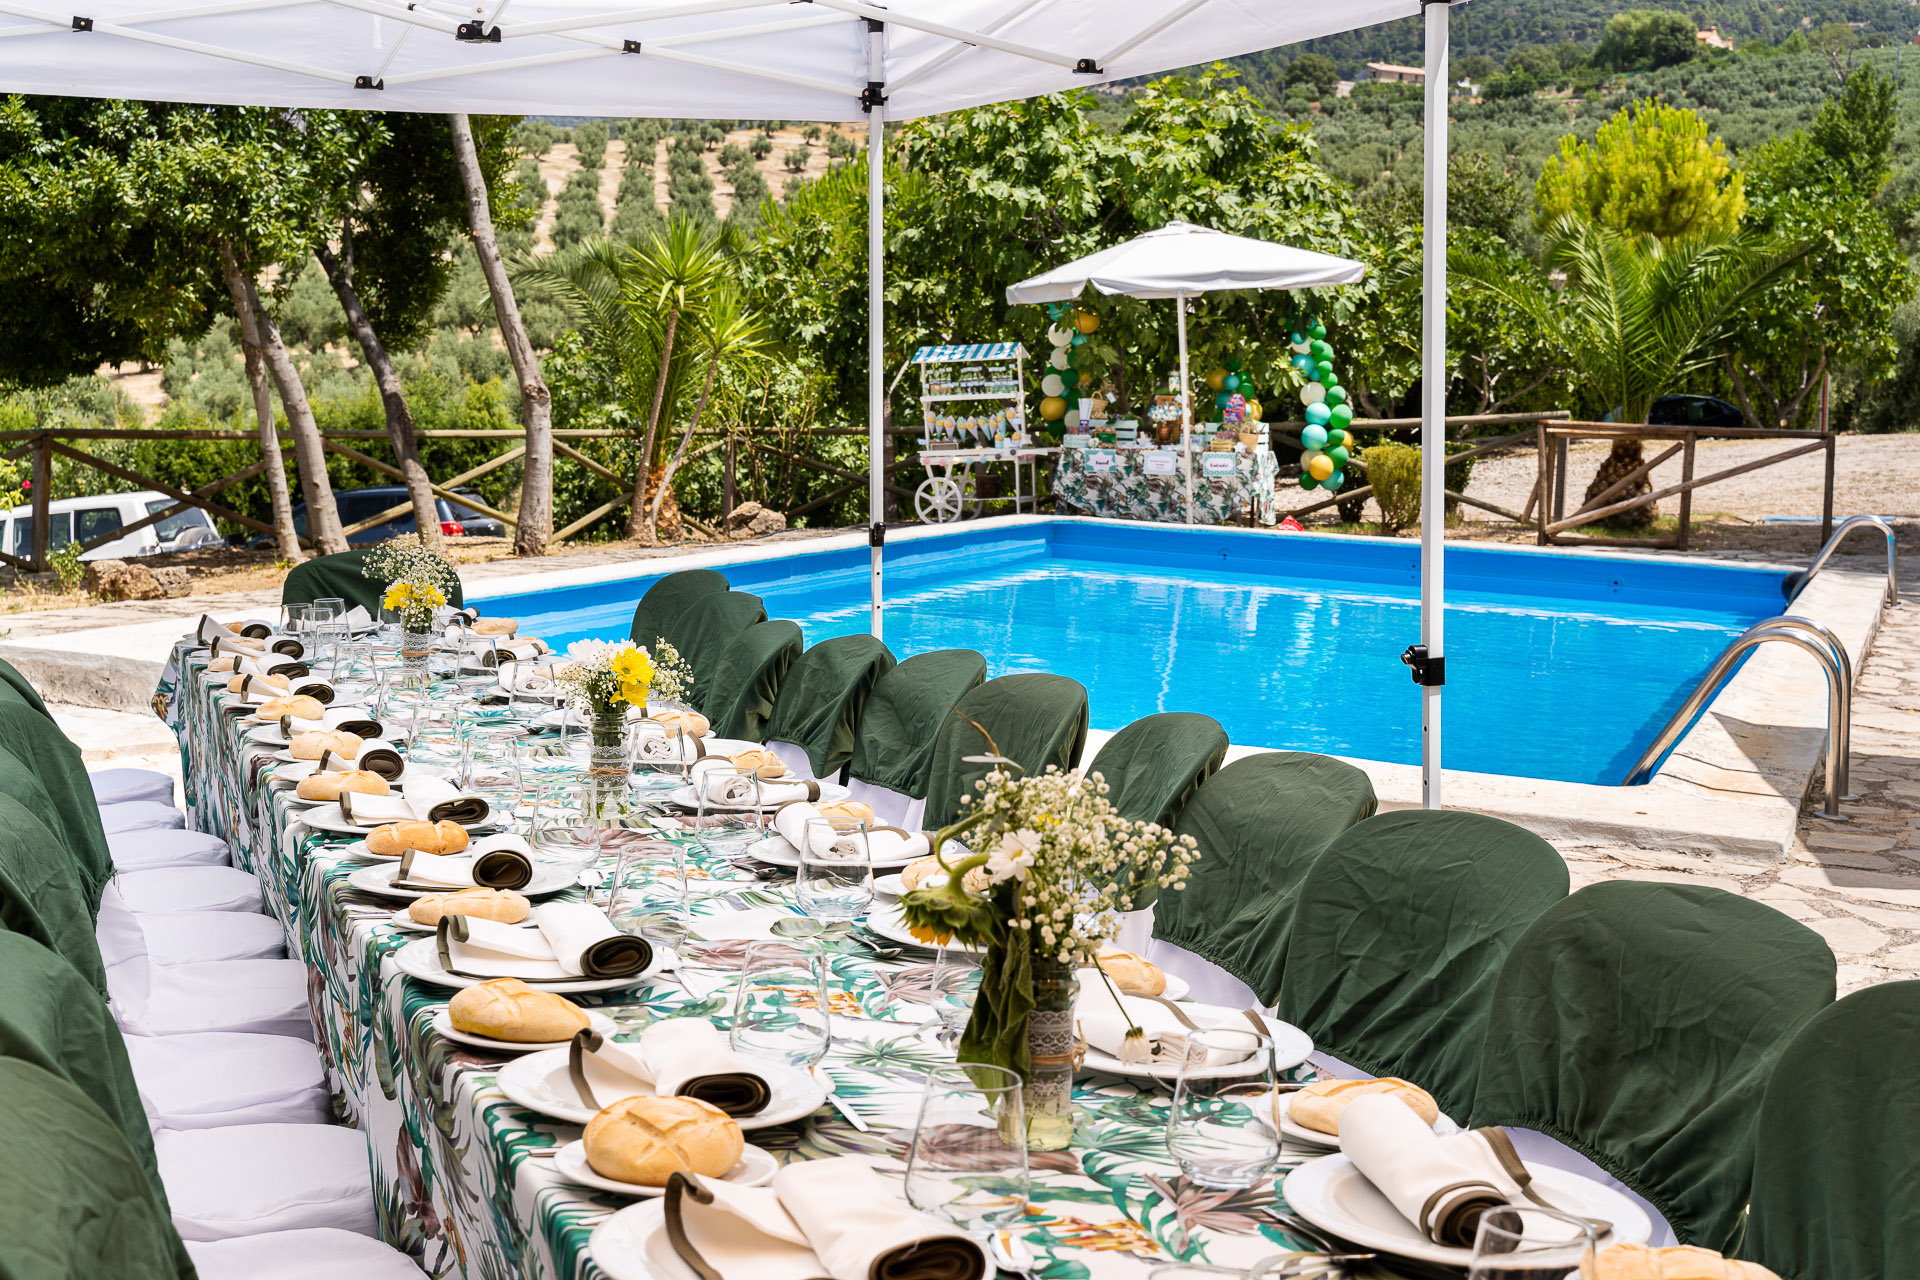 Celebra tu evento en nuestra alojamiento rural con jardin y piscina